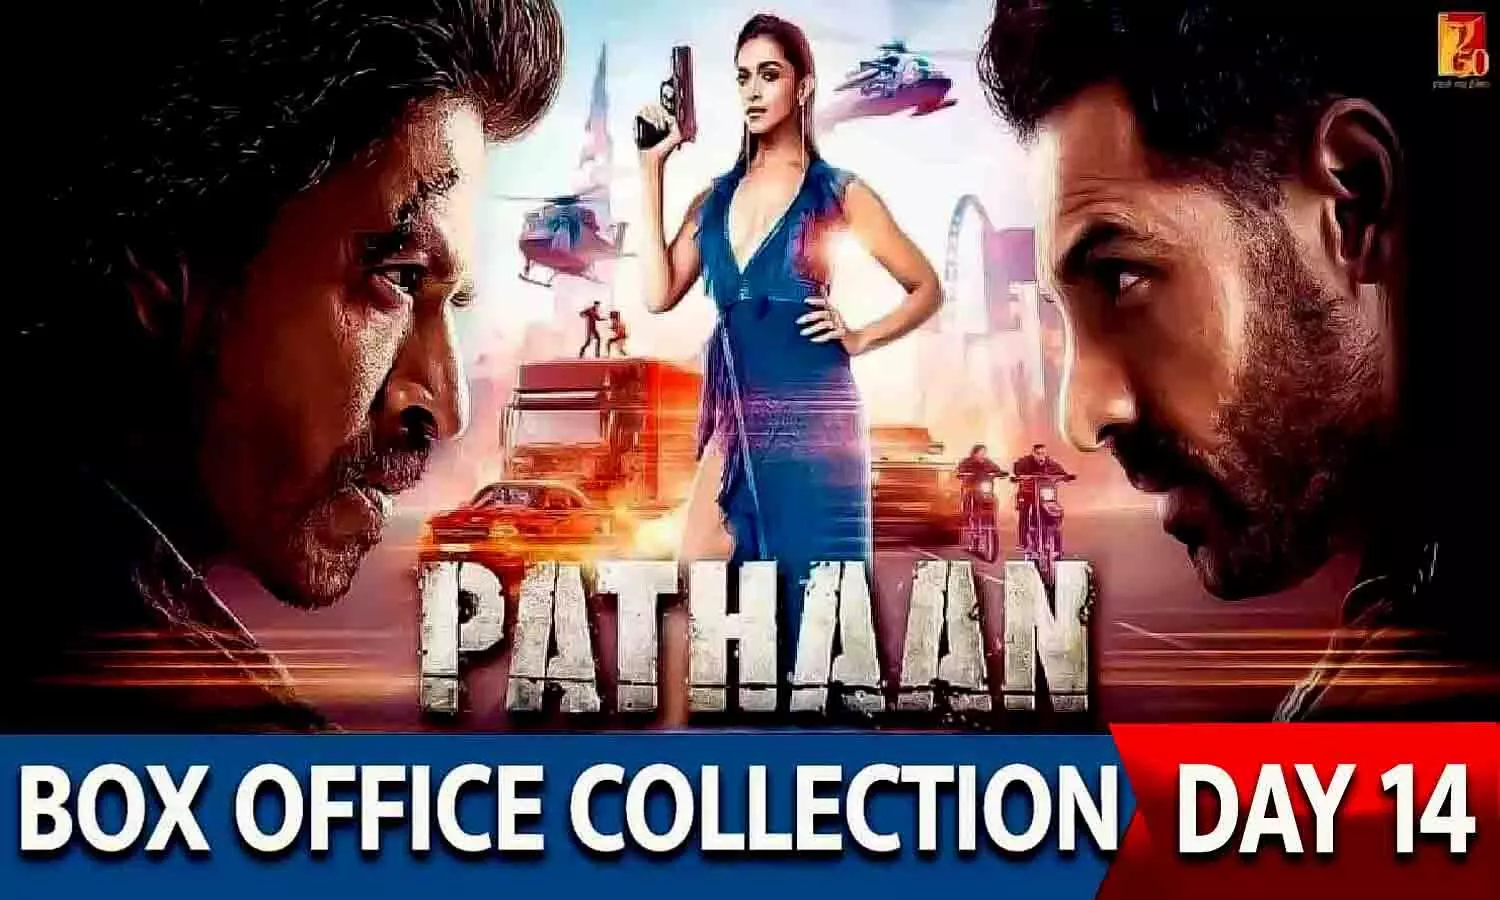 Pathaan Box Office Collection Day 14: शाहरुख खान की फिल्म पठान की कमाई में मंगलवार को गिरावट आई, लेकिन रिकॉर्ड तोड़ना जारी है